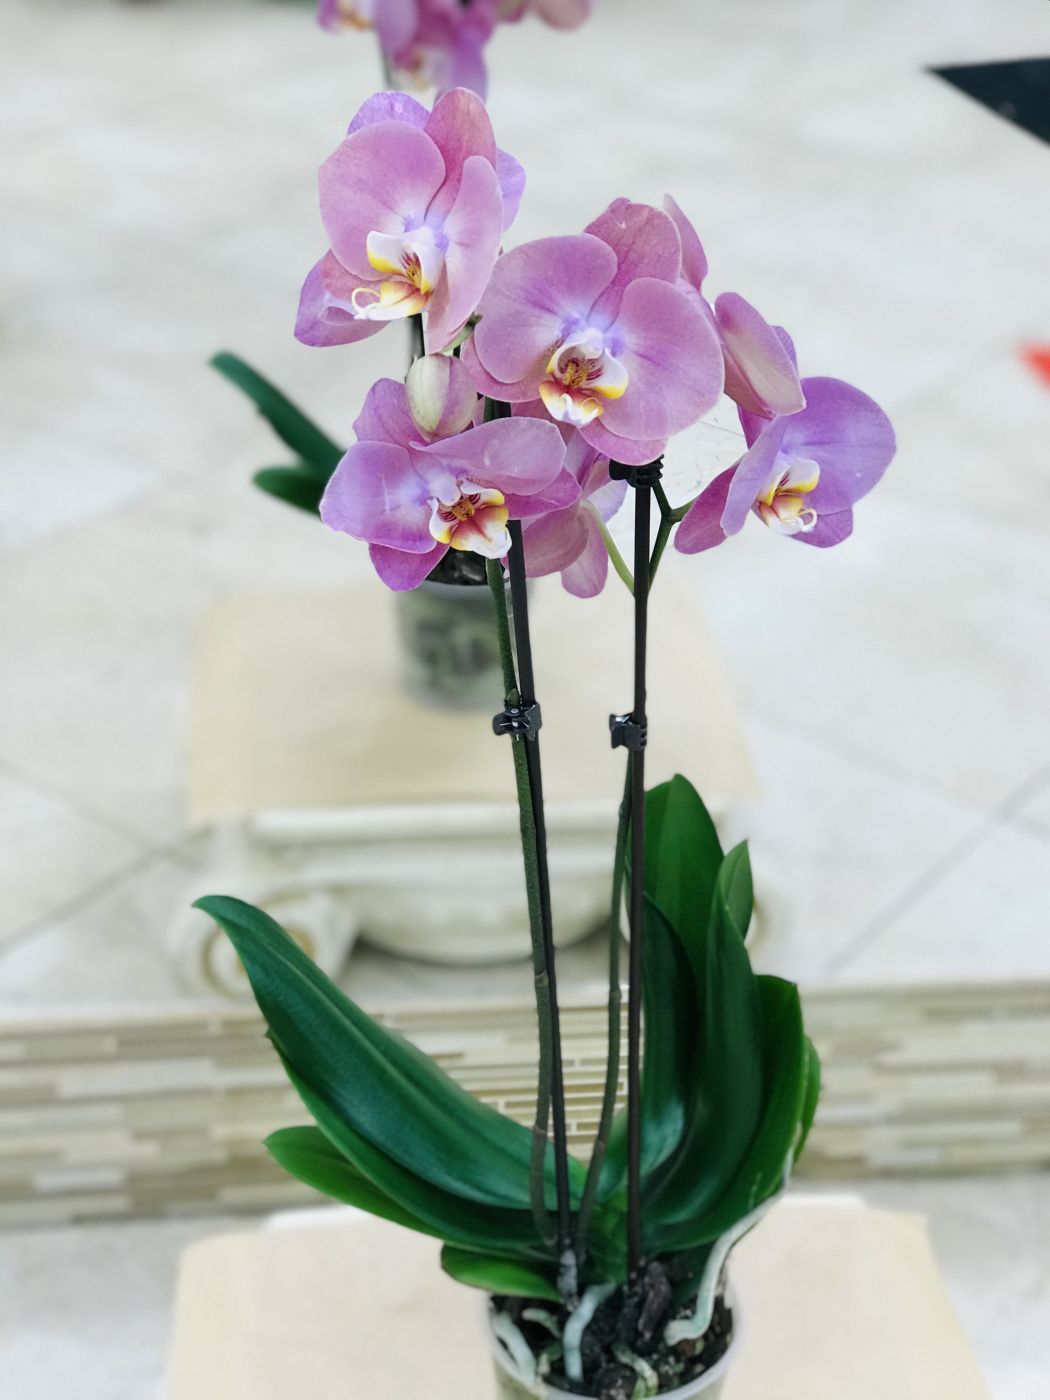 Орхидея 2 ствола